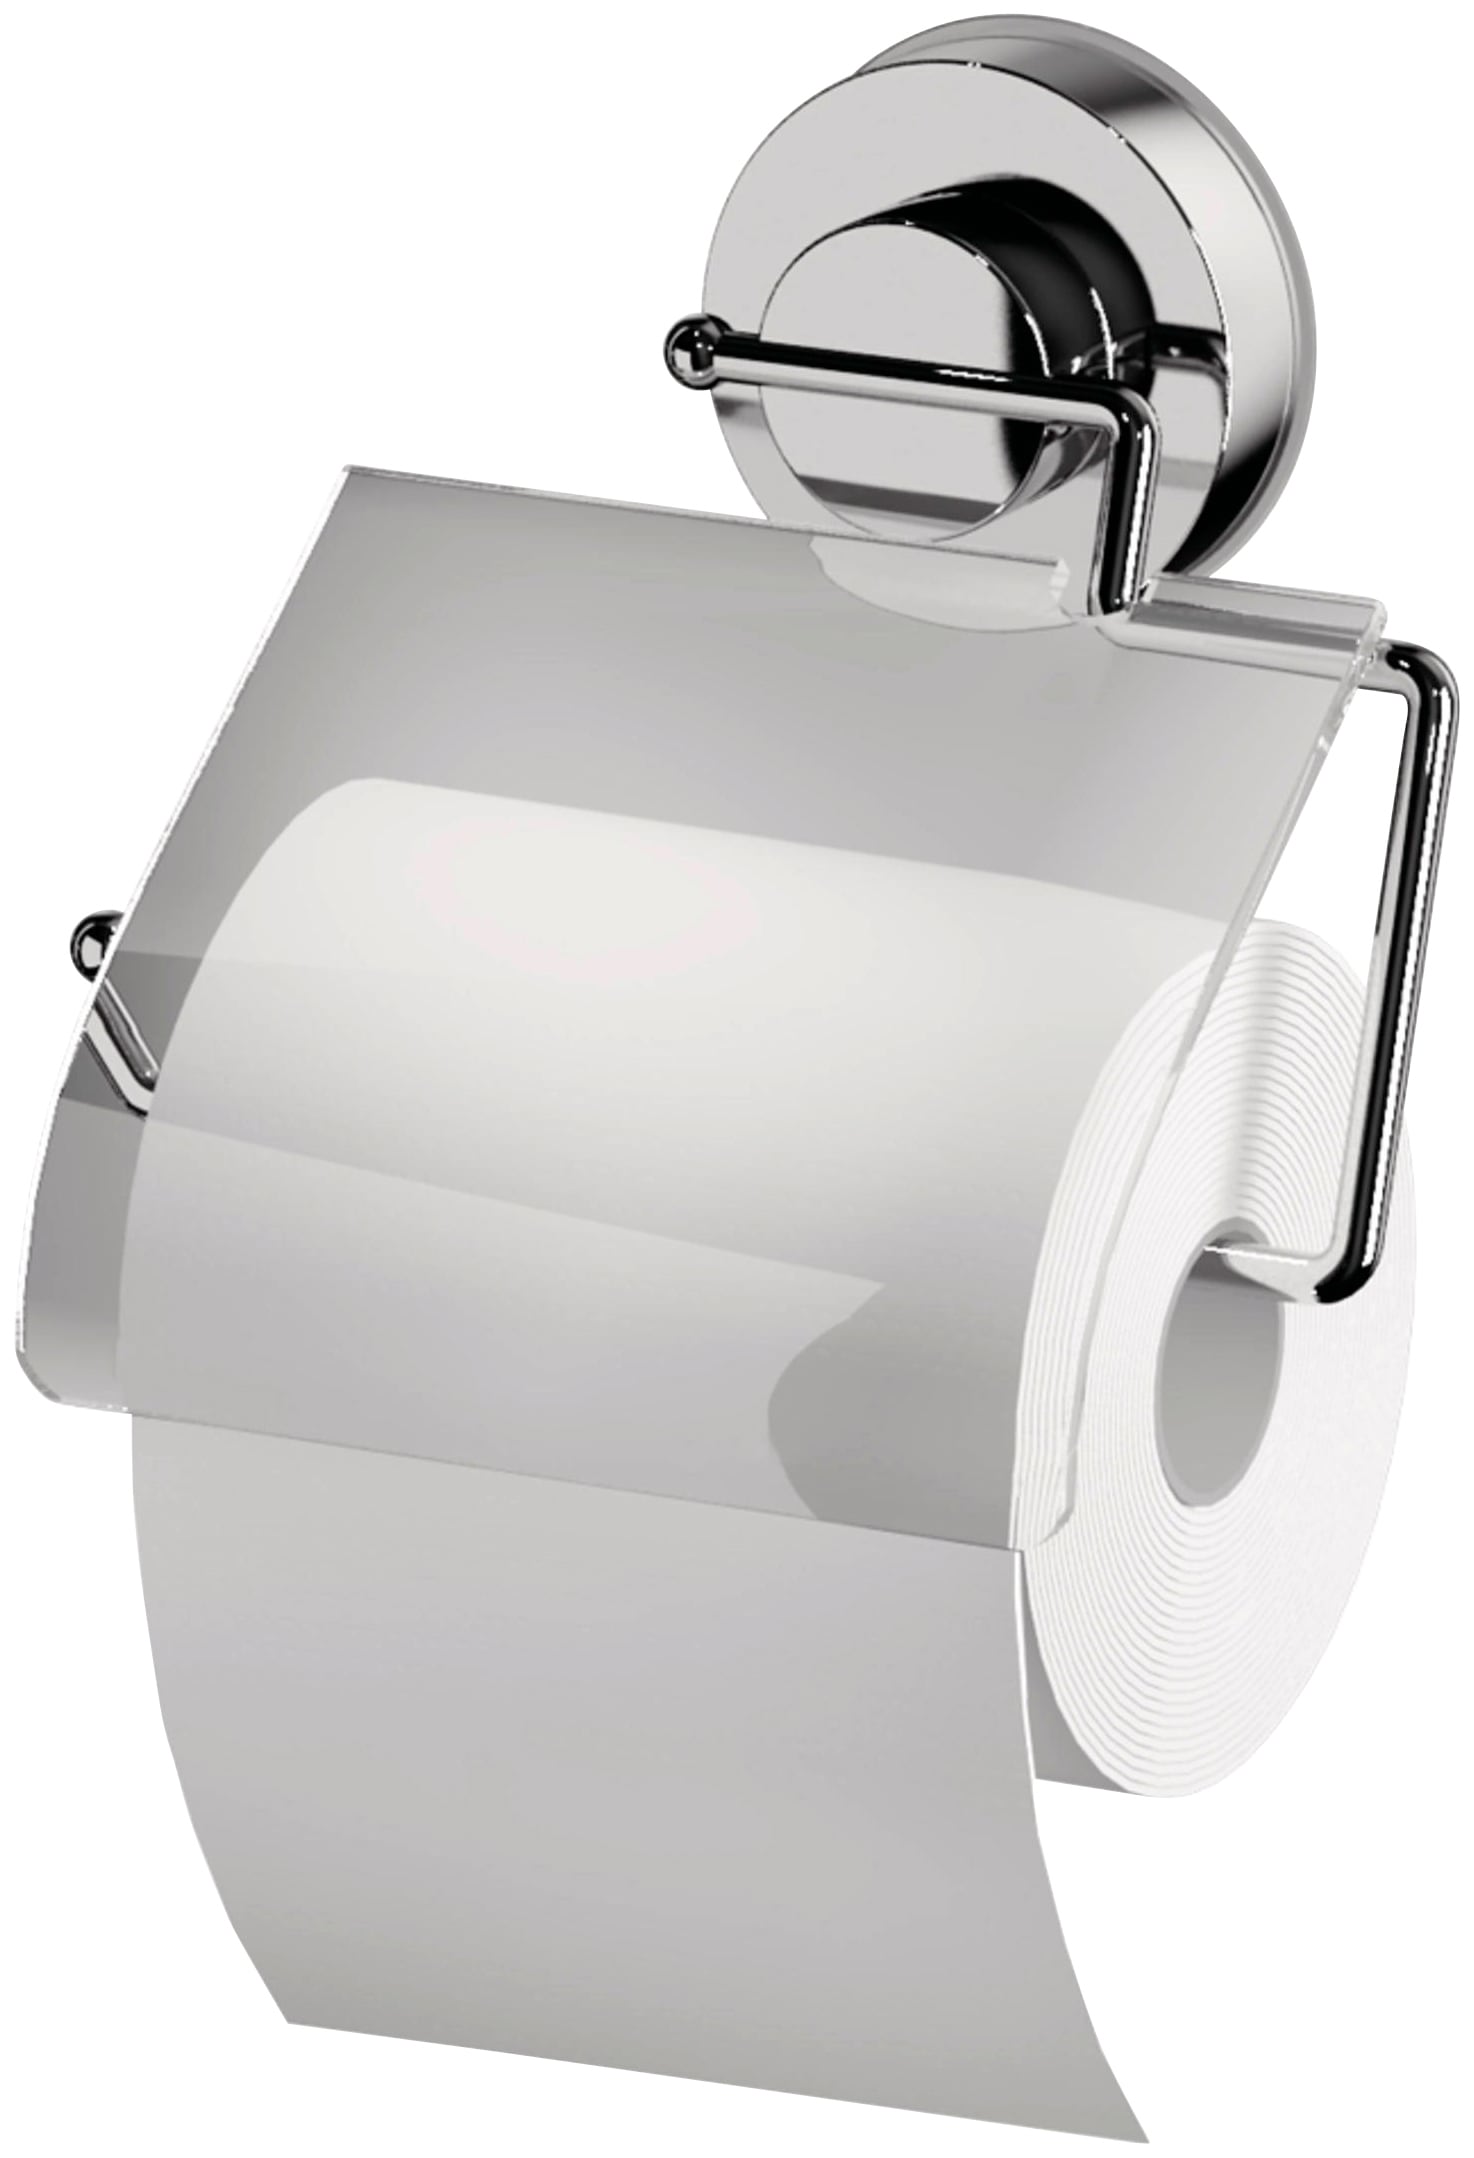 3in1 Edelstahl Toiletten Papier Wandhalterung Ablage